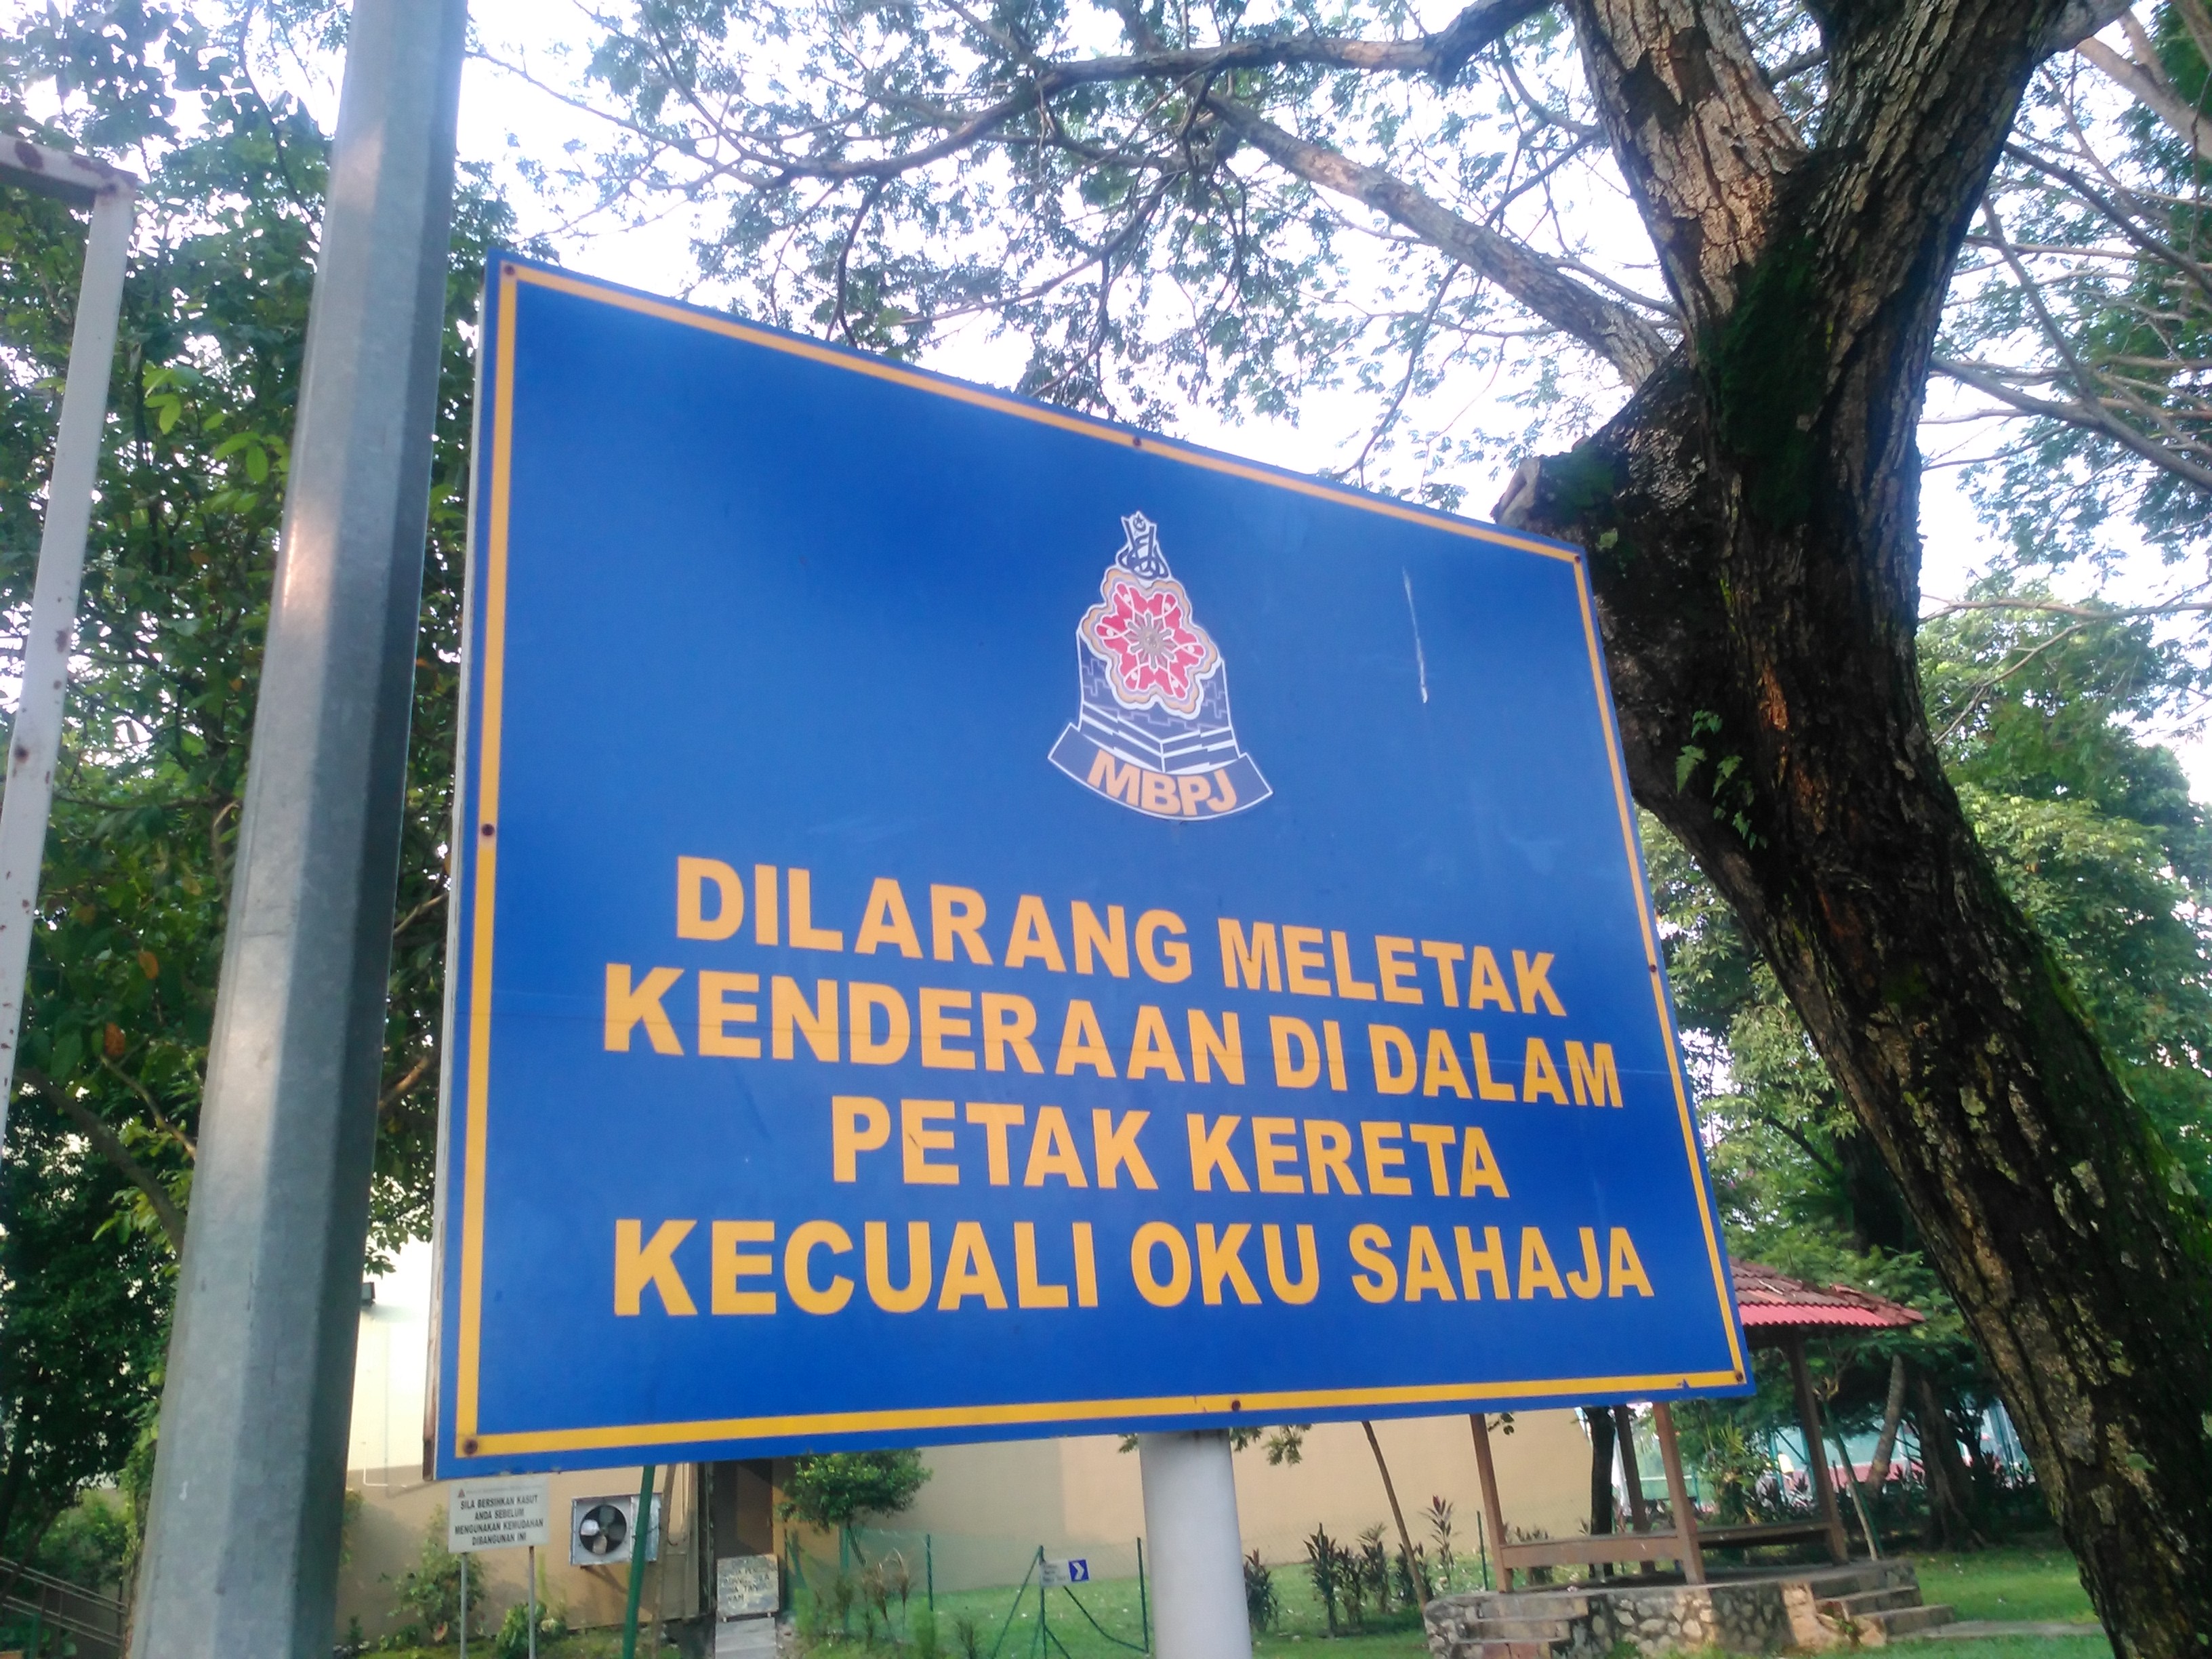 マレーシアの道路標識